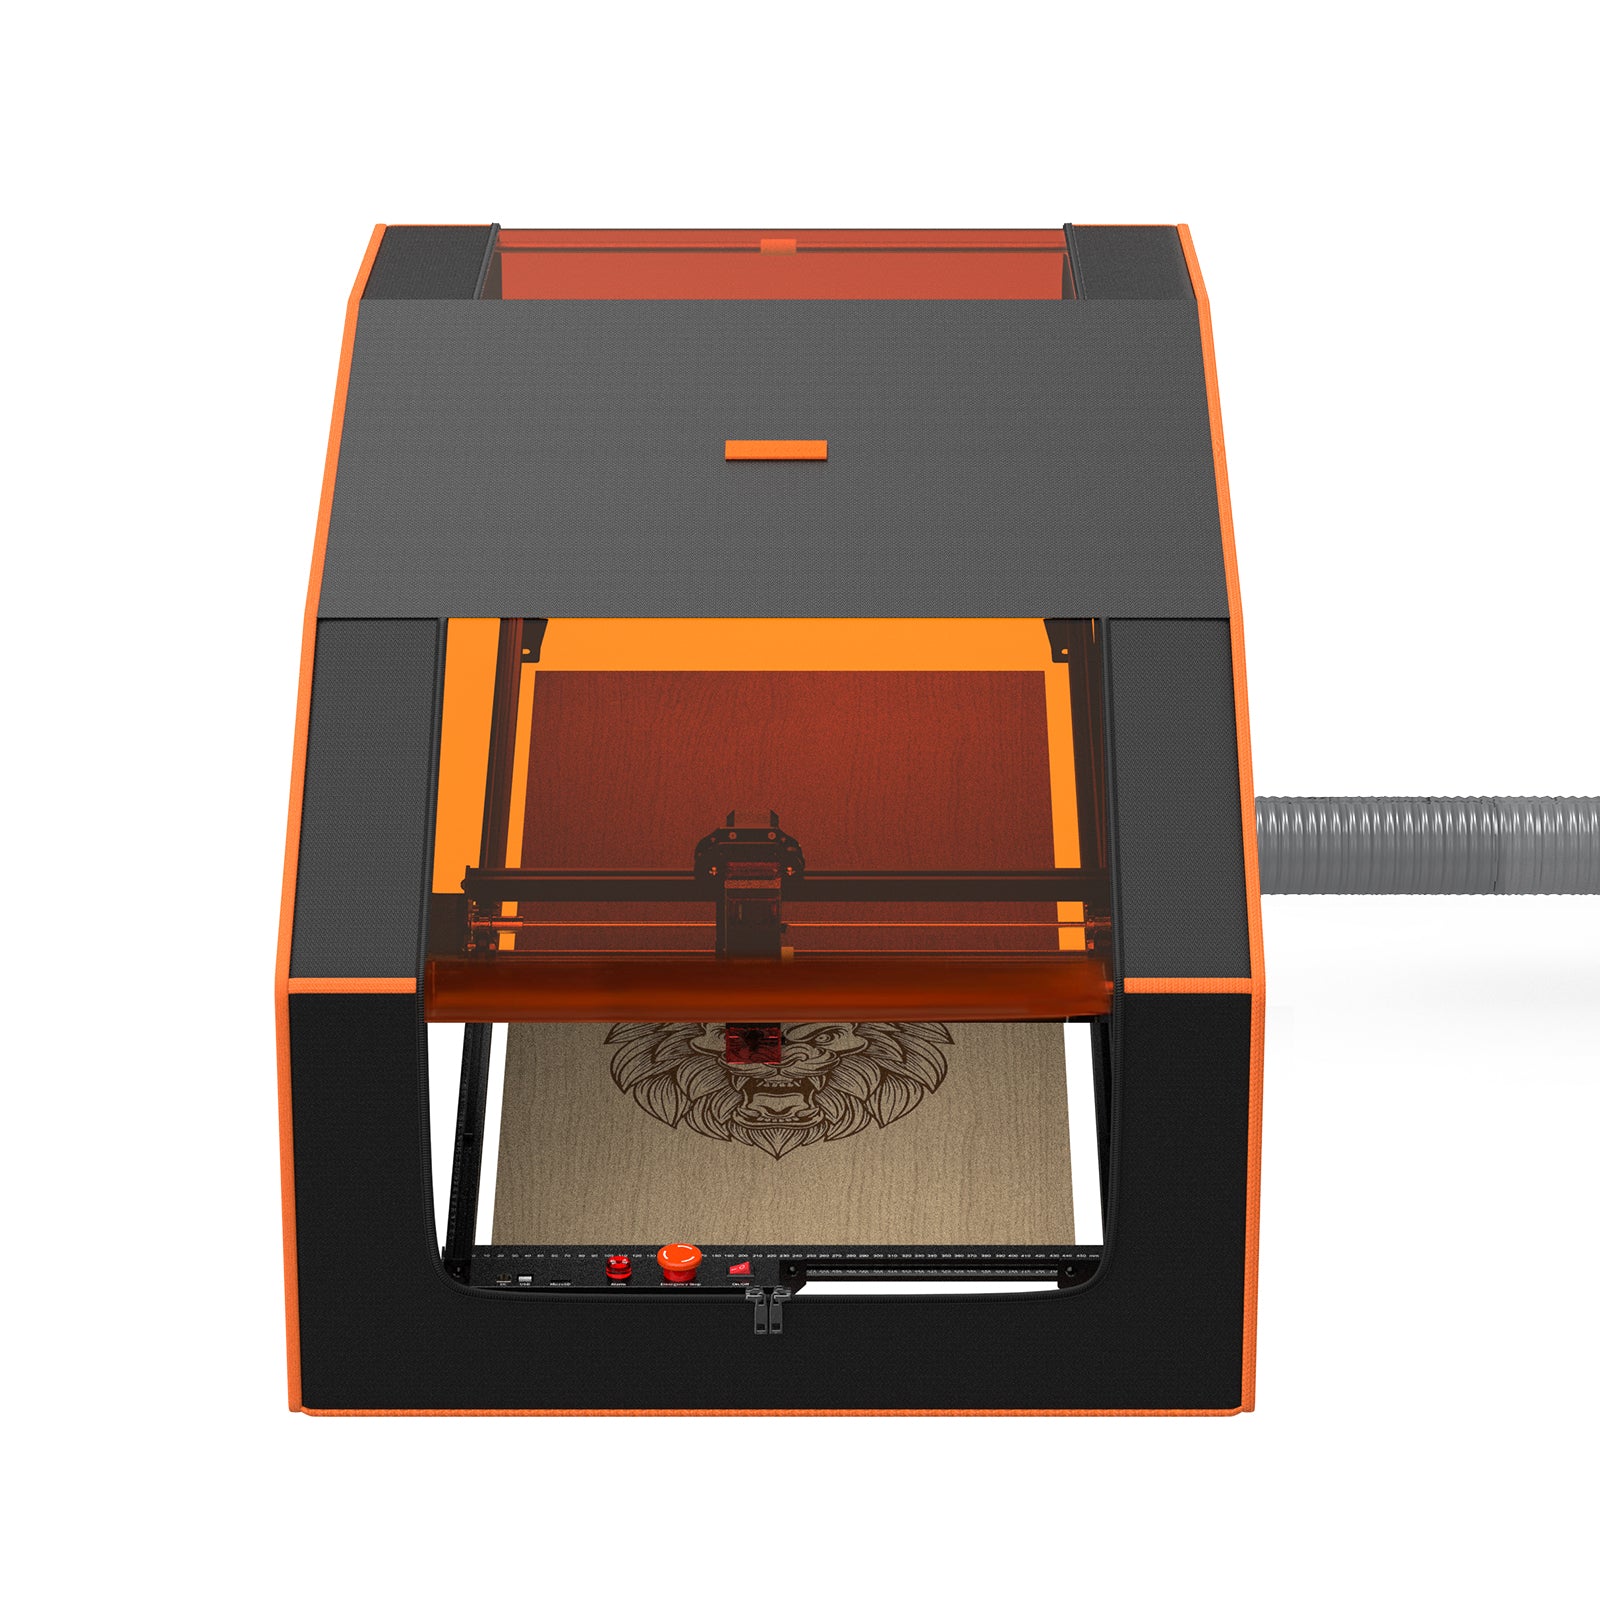 Professor - Laser Engraver Enclosure — makergadgets